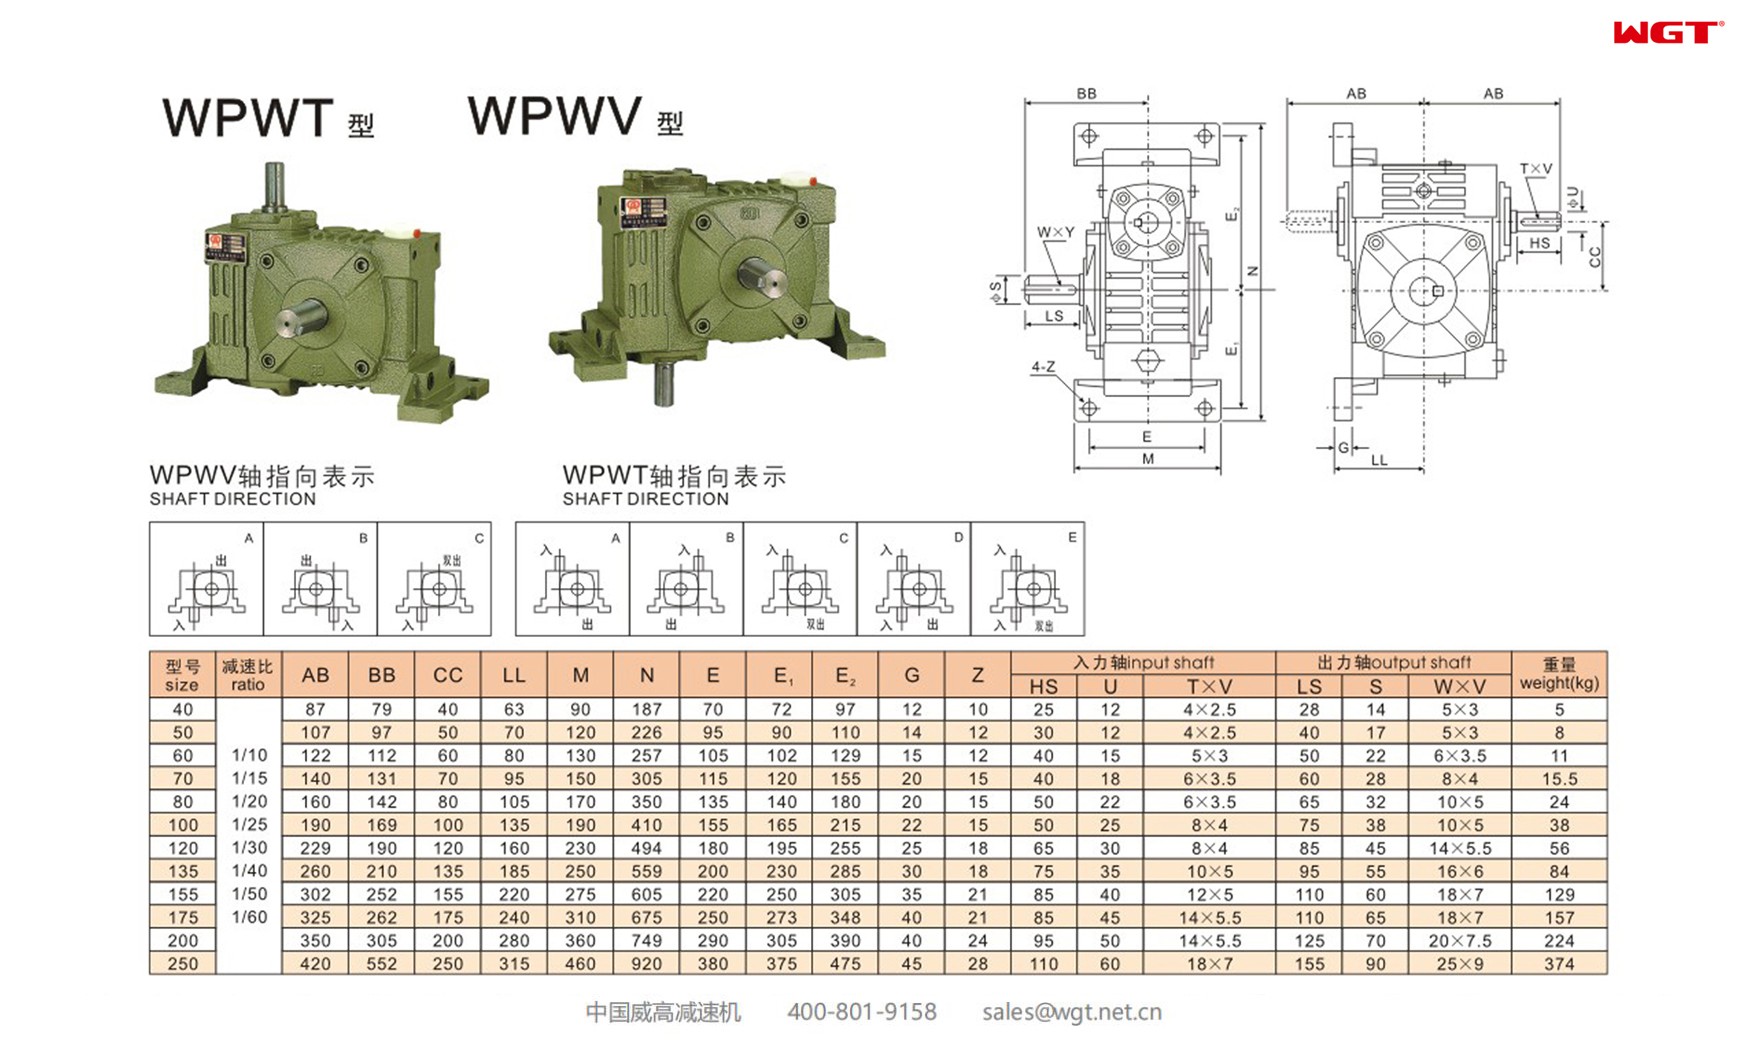 WPWT155 worm gear reducer universal speed reducer 